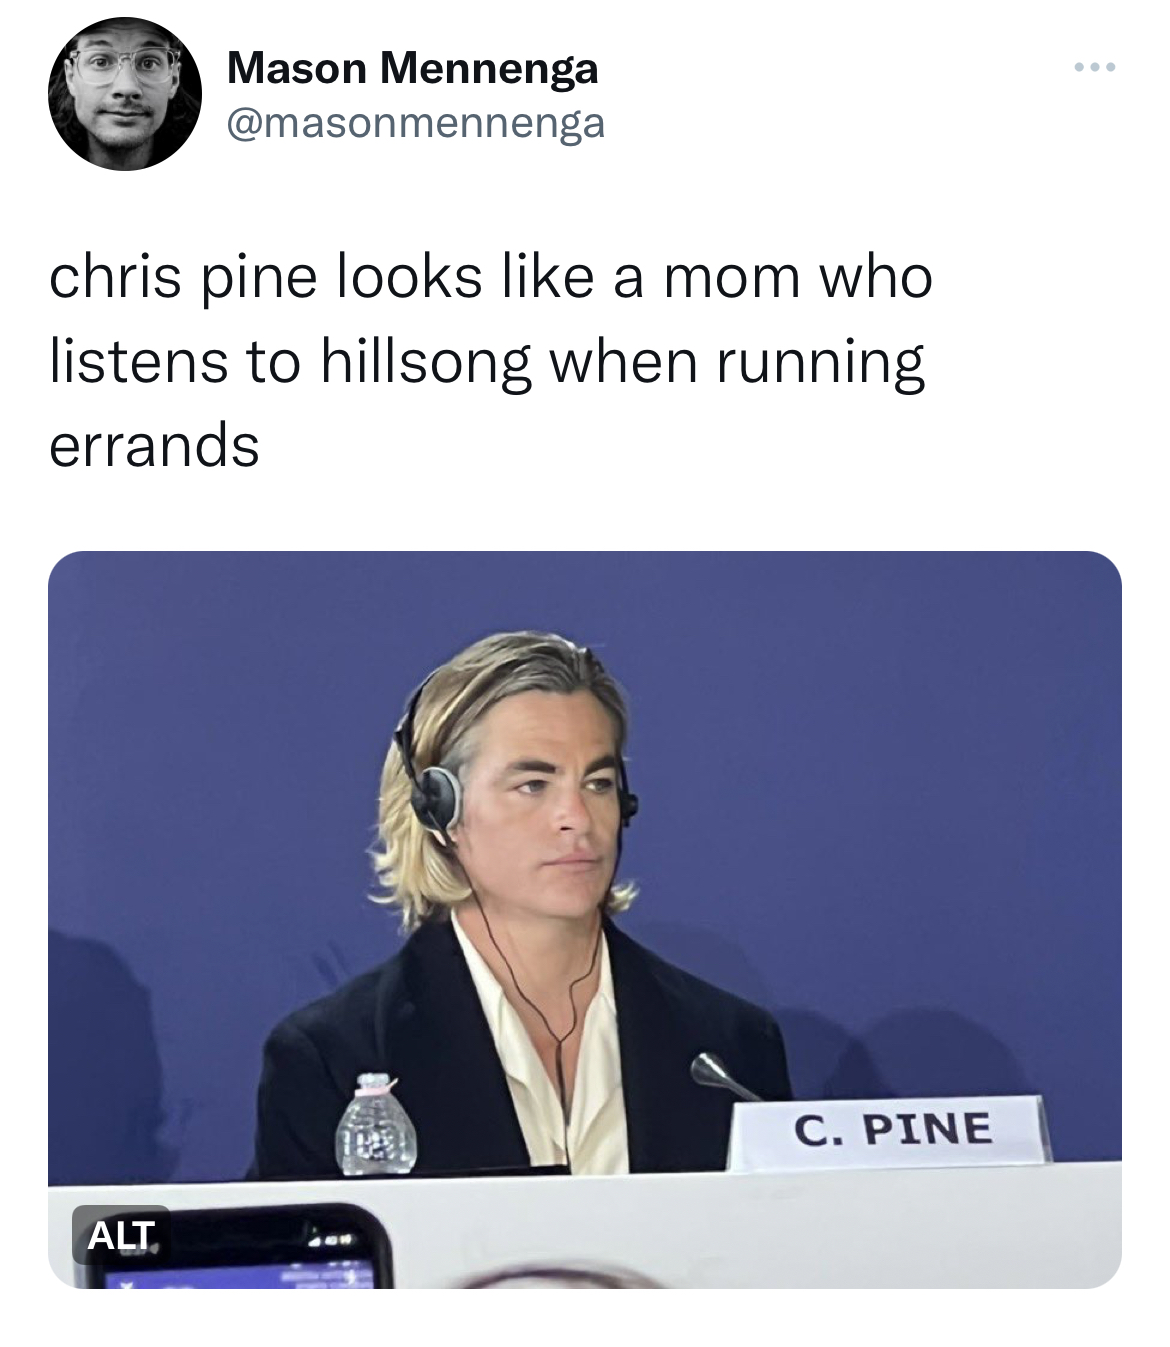 Chris Pine Venice Film Festival Memes - media - Mason Mennenga chris pine looks a mom who listens to hillsong when running errands Alt. C. Pine